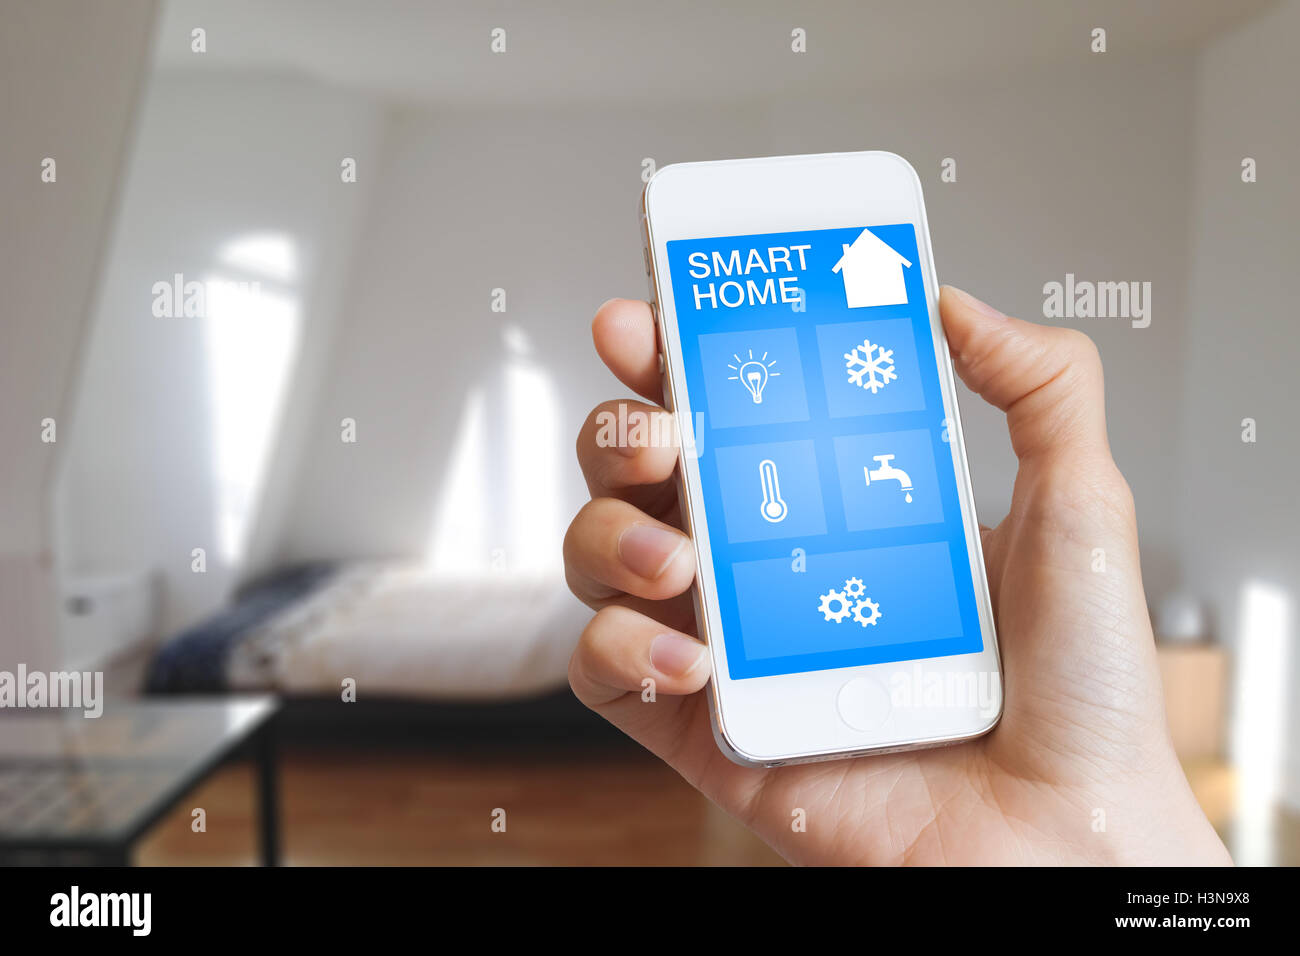 Sistema di automazione intelligente app sullo smartphone attesa da donna mano con arredamento in background Foto Stock